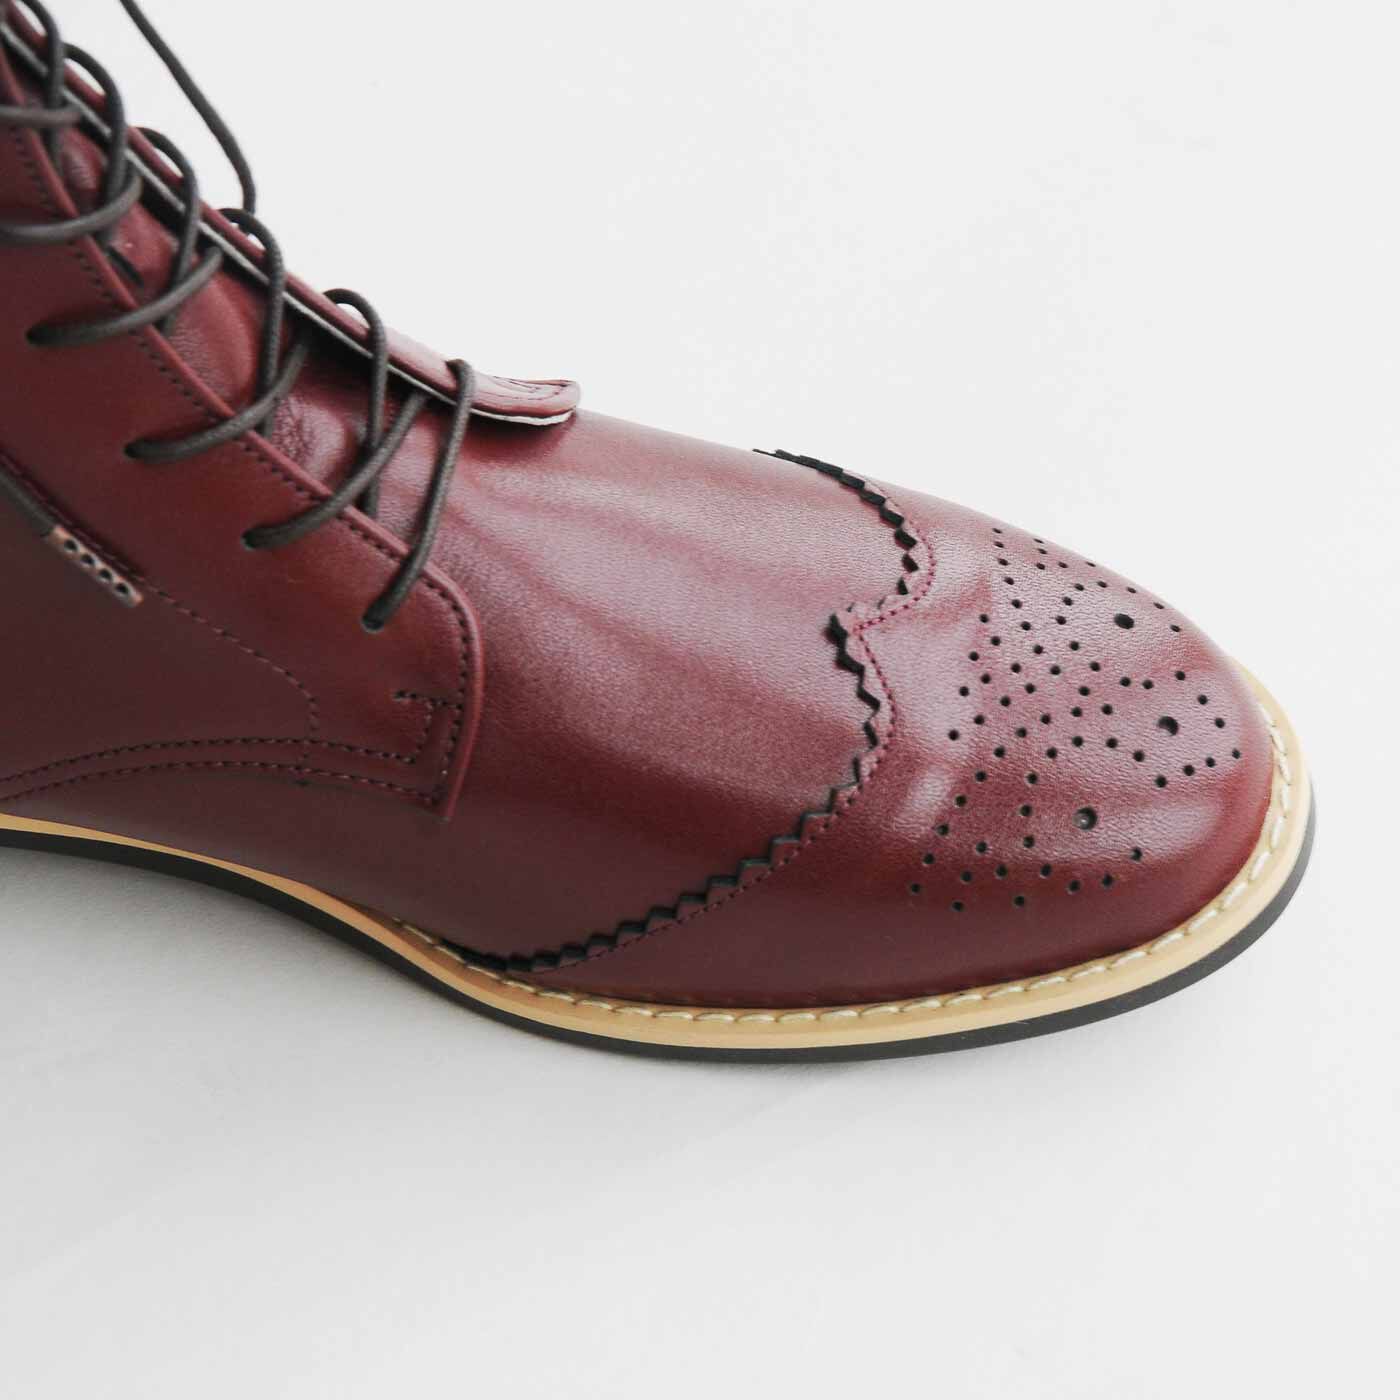 ＆Stories|長田靴職人が叶えた 理想の本革ウィングチップブーツ〈レッドブラウン〉[本革 ブーツ：日本製]|おしゃれなウィングチップデザイン。